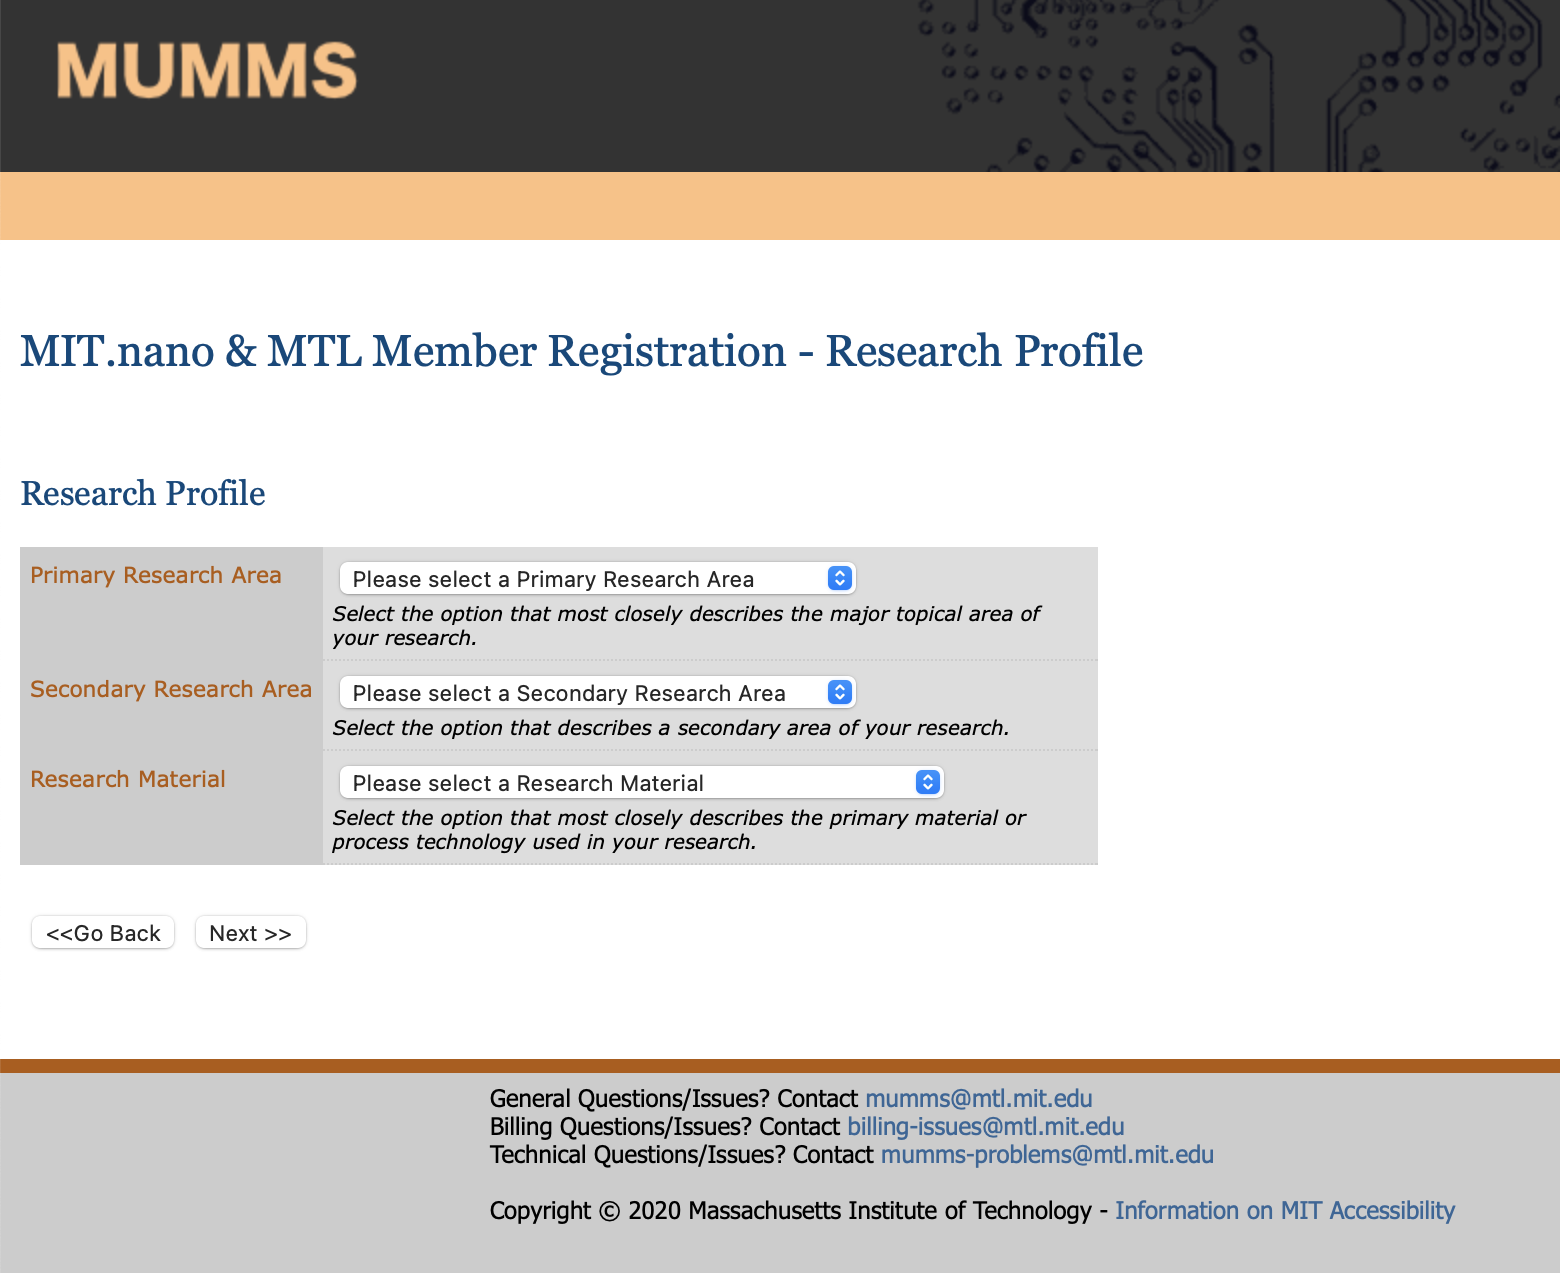 MUMMS Research Profile page